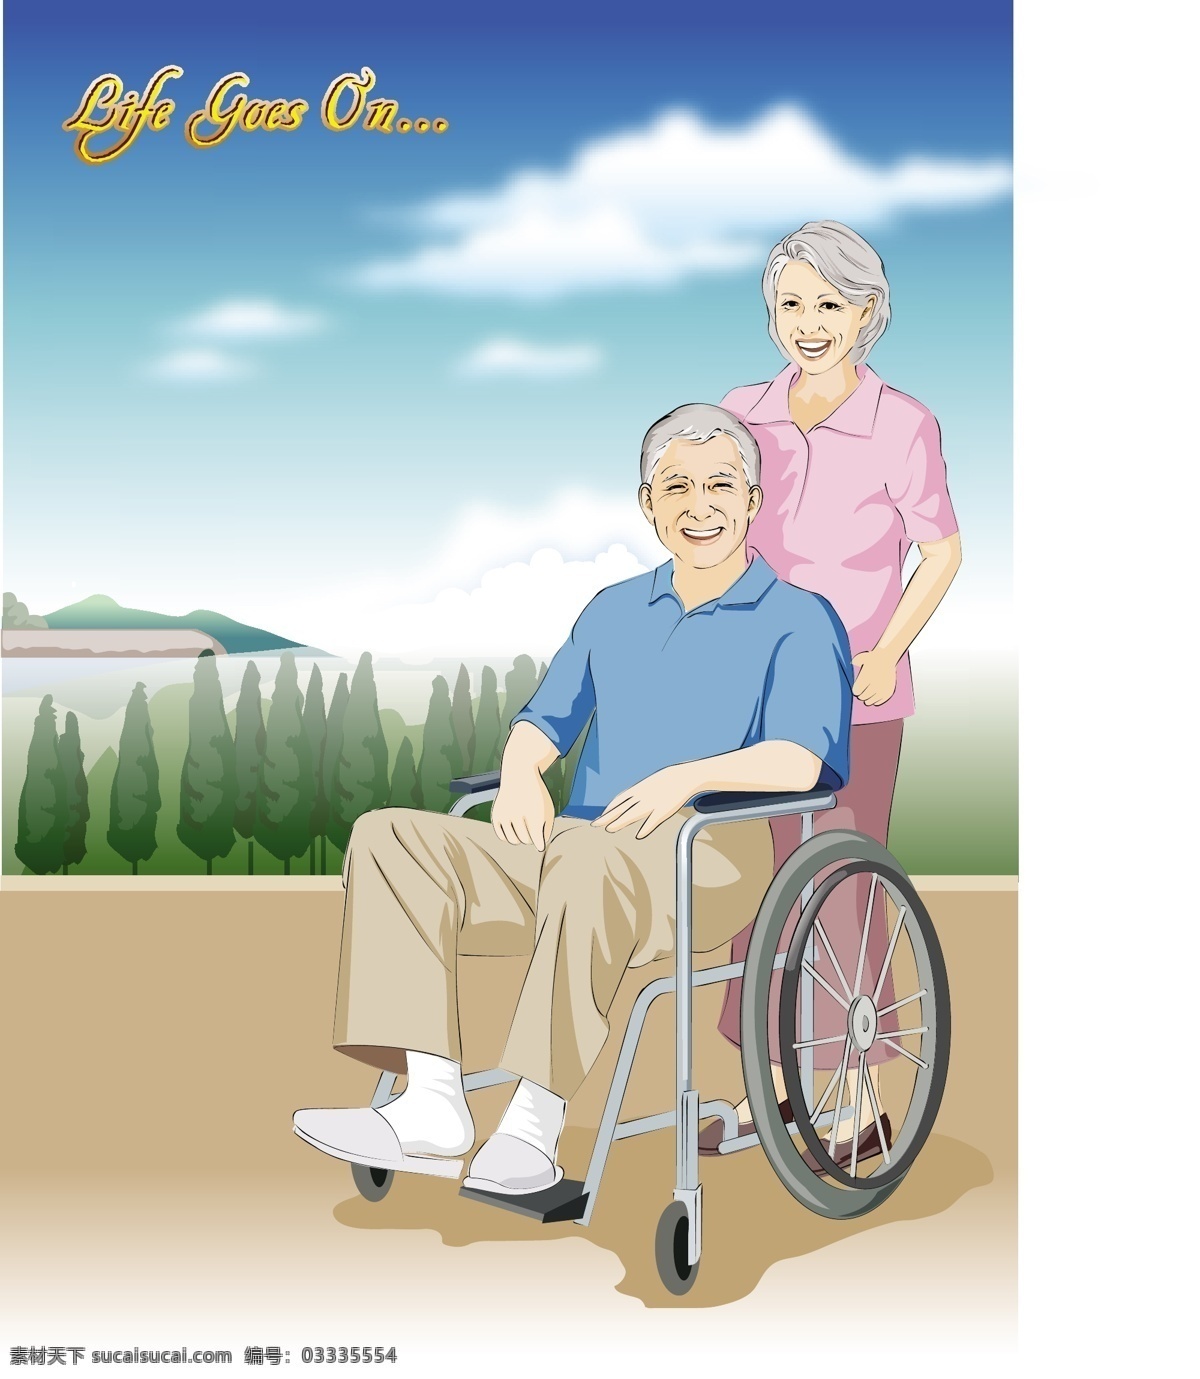 幸福的晚年 推 轮椅 去 郊外 出行 推轮椅 合影 白发苍苍 老年人 夫妻 恩爱 幸福 晚年 爷爷 奶奶 矢量 夕阳红 老人 白色